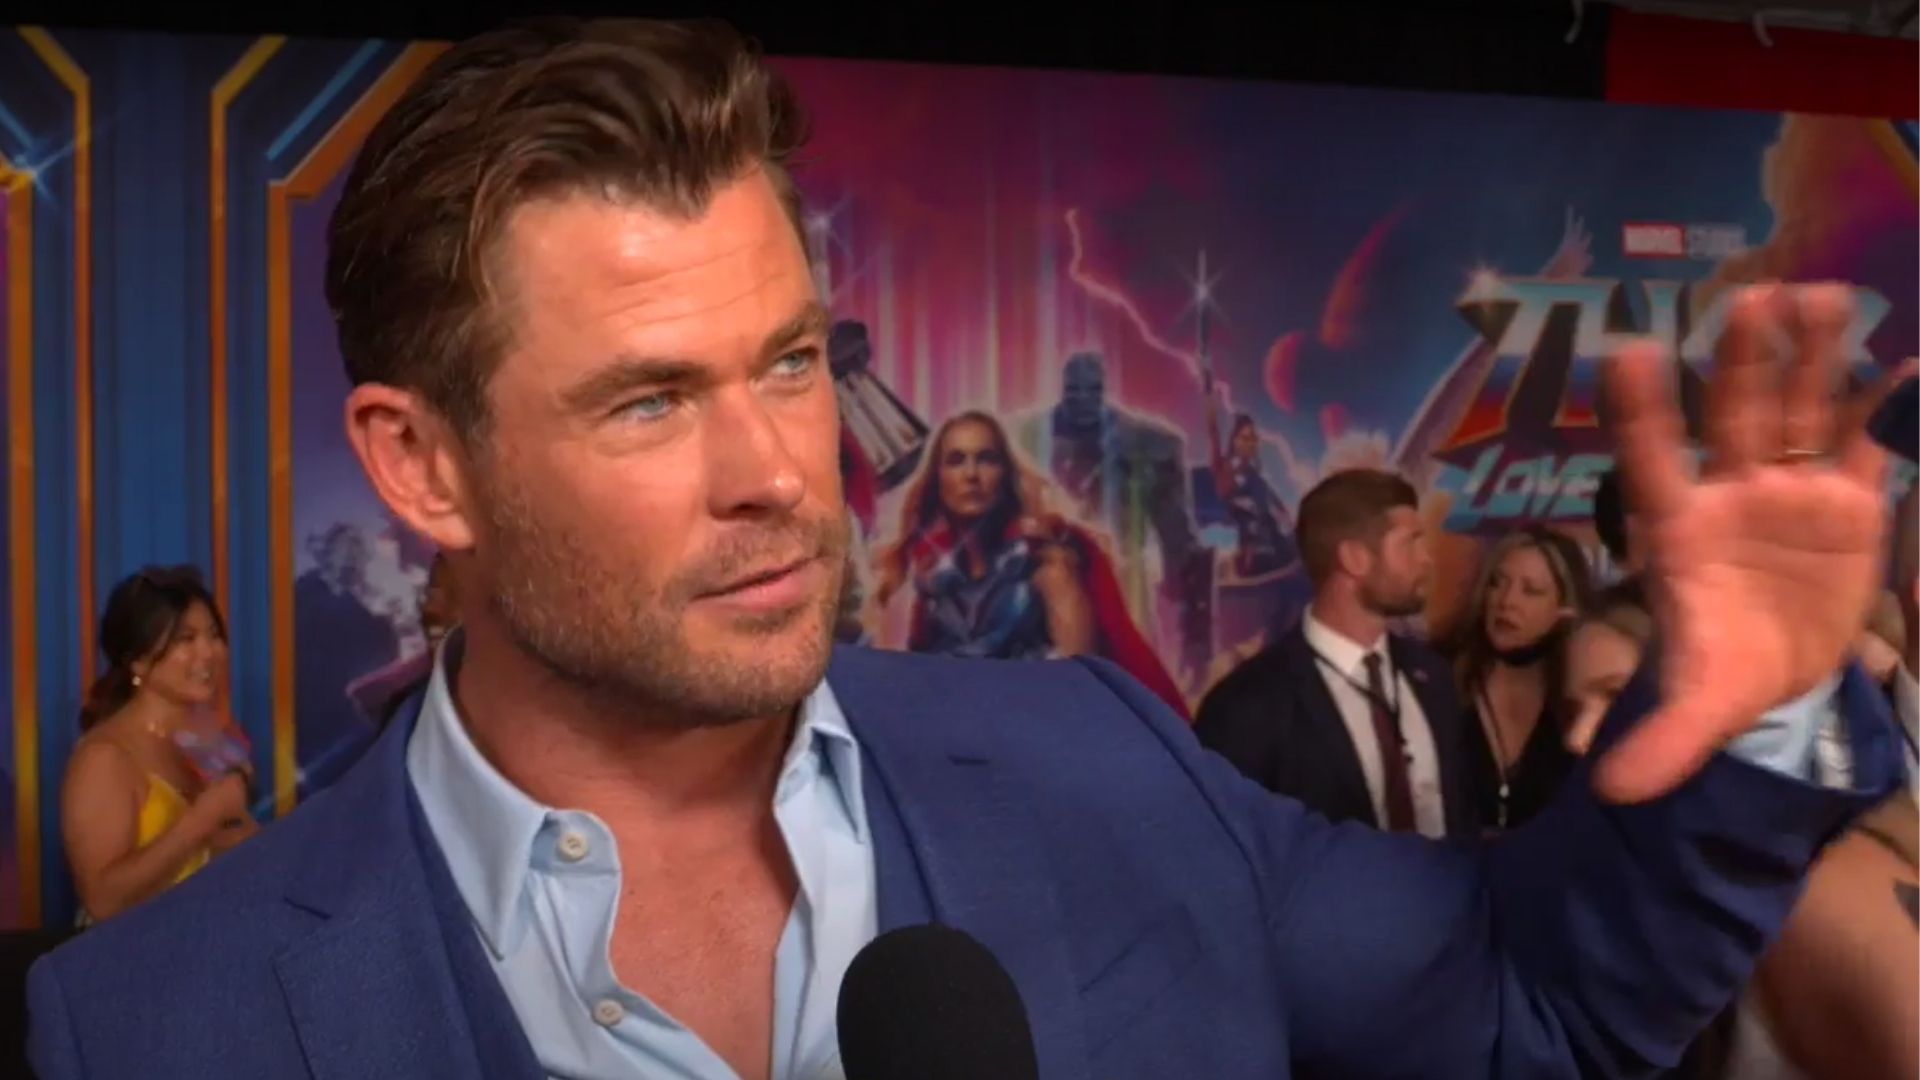 Chris Hemsworth, o Thor da Marvel, descobre predisposição para a